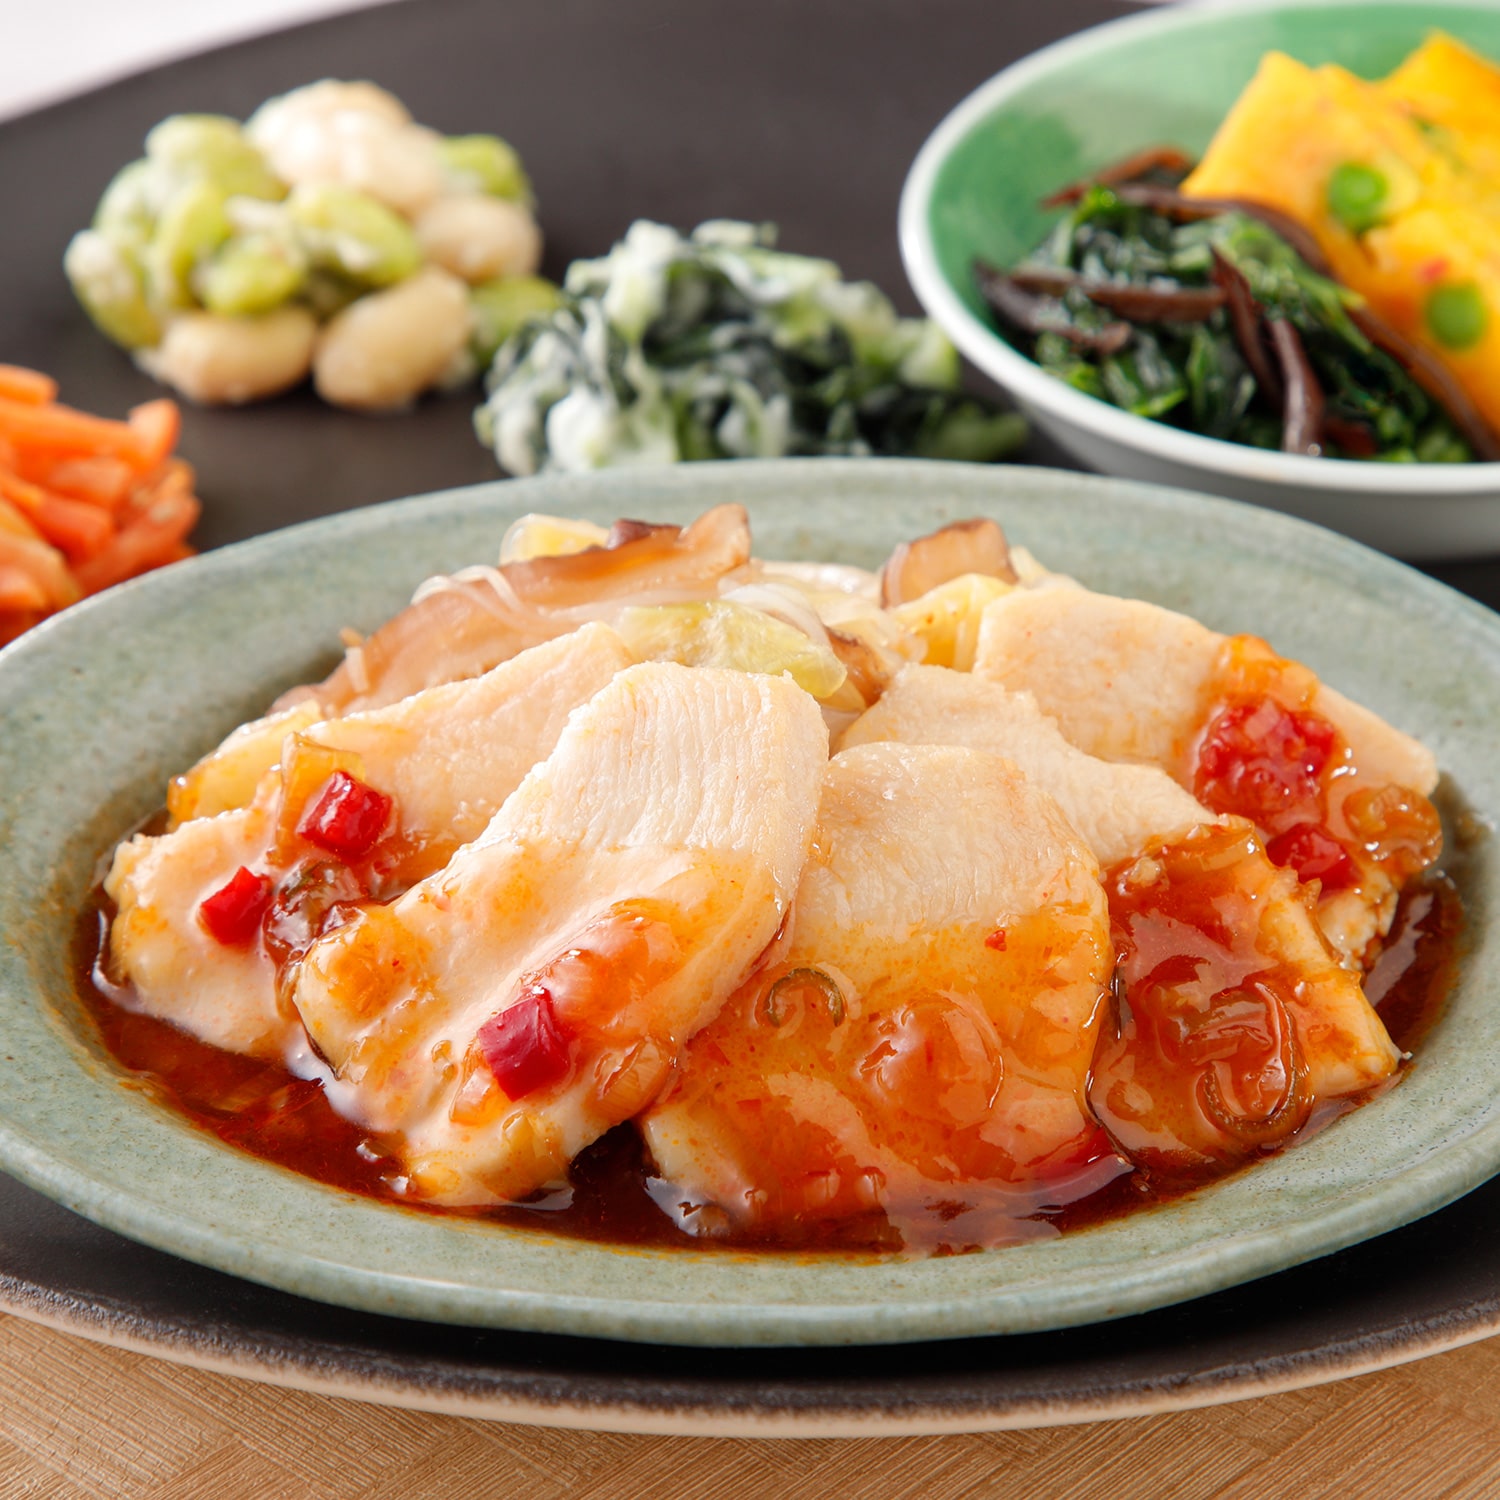 ニチレイのヘルシー食品・健康管理食・ダイエット食気くばり御膳 鶏の炭火焼 うま塩だれセット(冷凍): ヘルシー食品のページです。